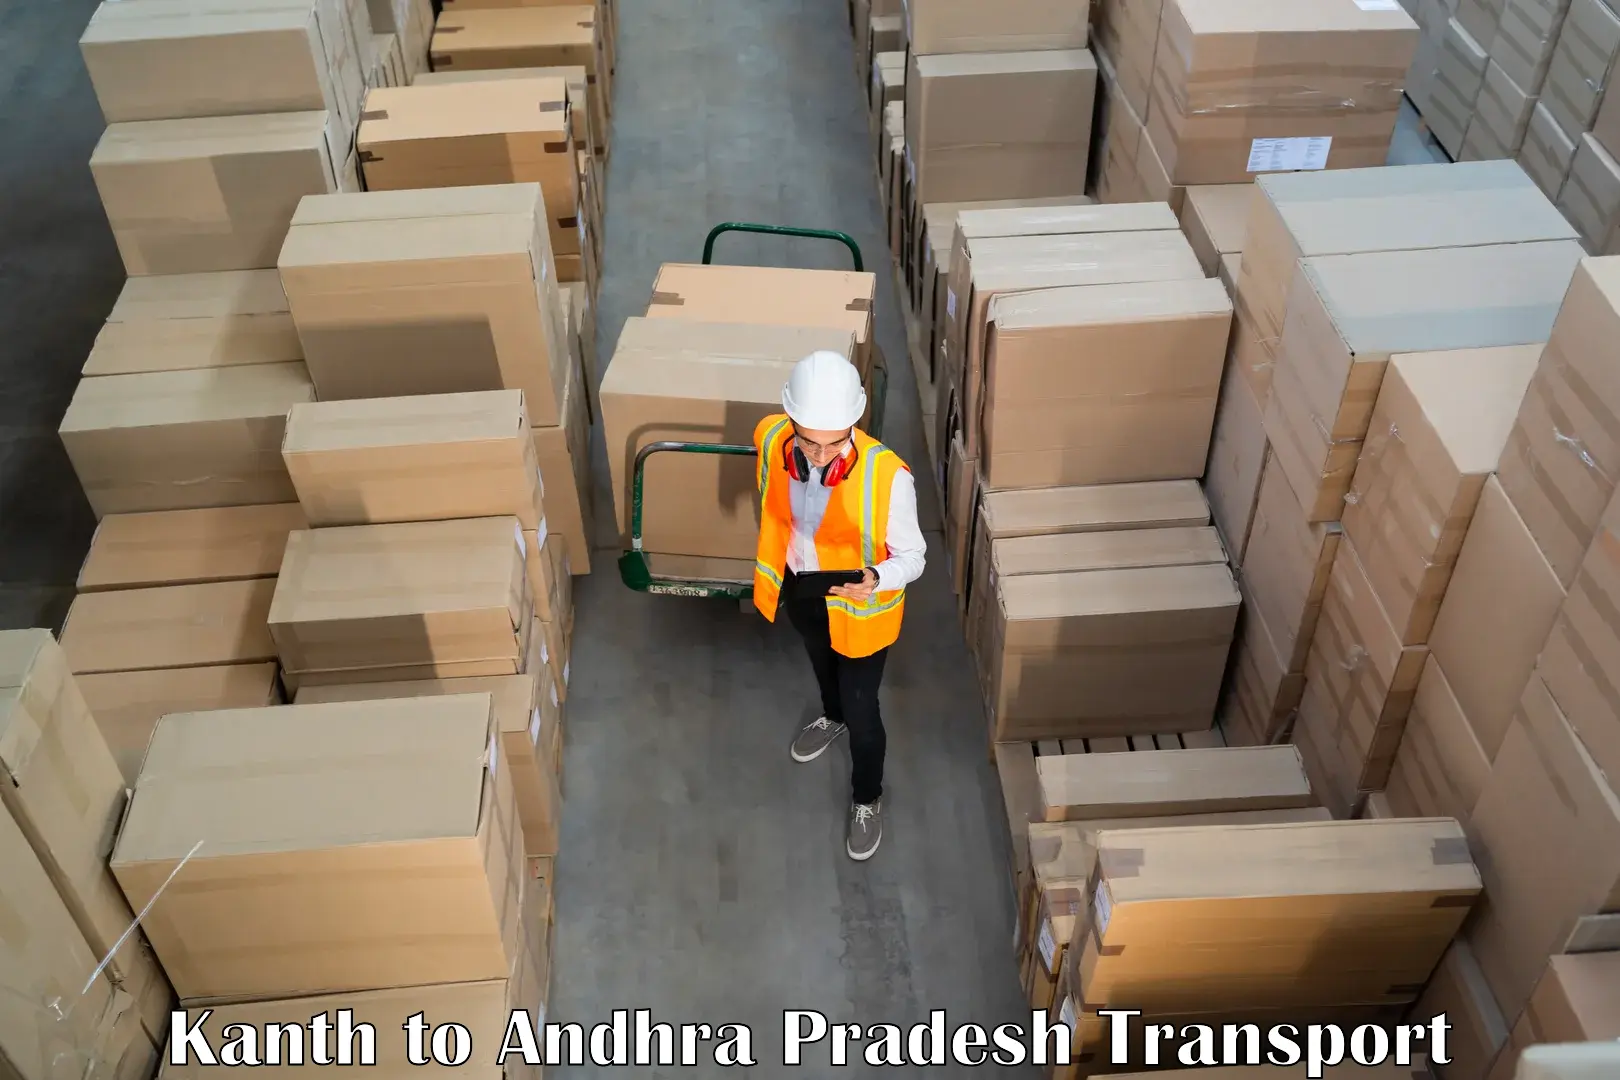 Furniture transport service Kanth to Andhra Pradesh